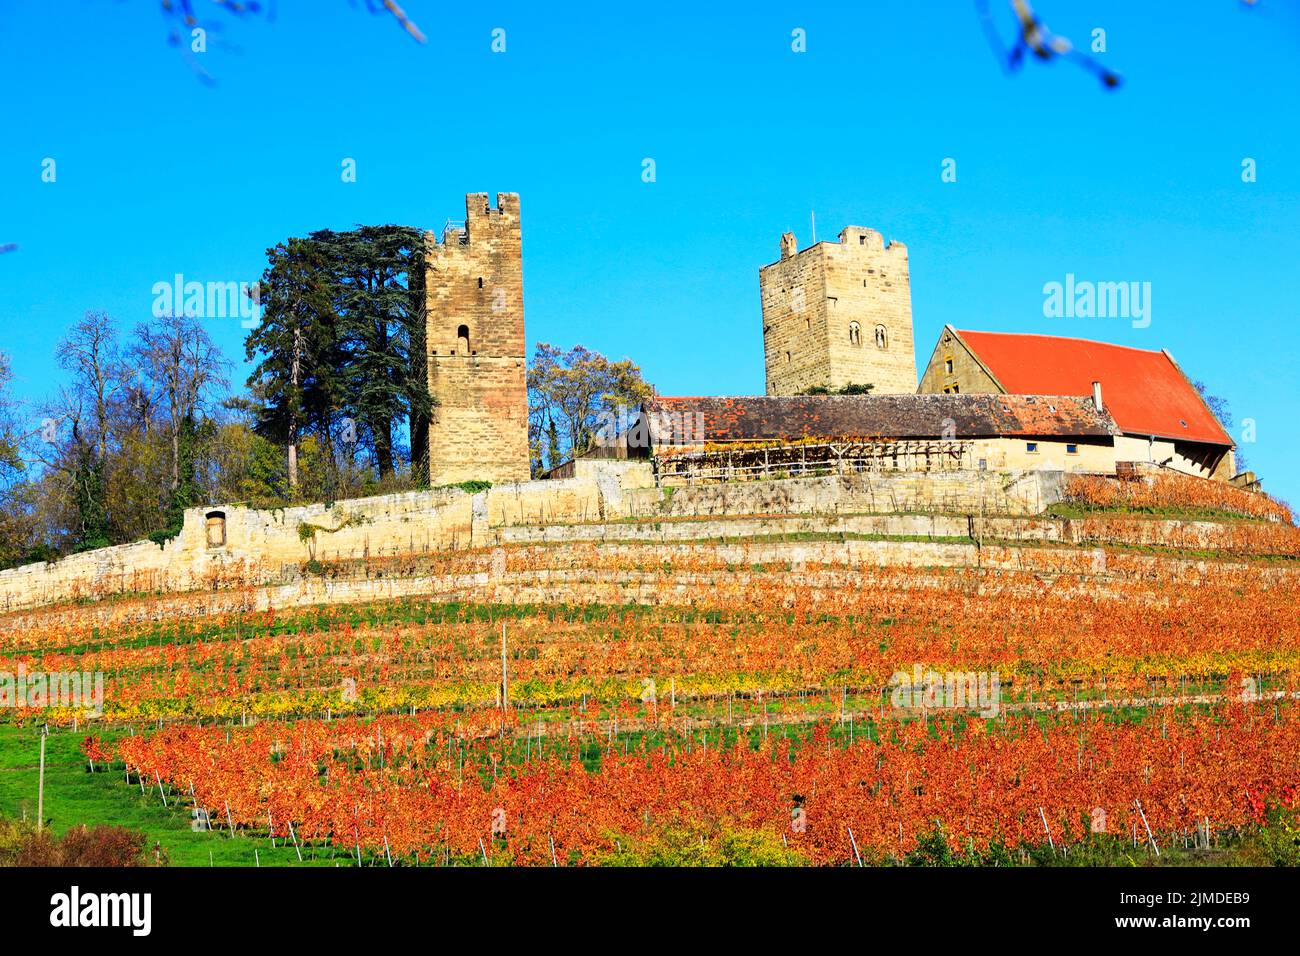 The Castle Neipperg near Heilbronn, Germany, Europe Stock Photo